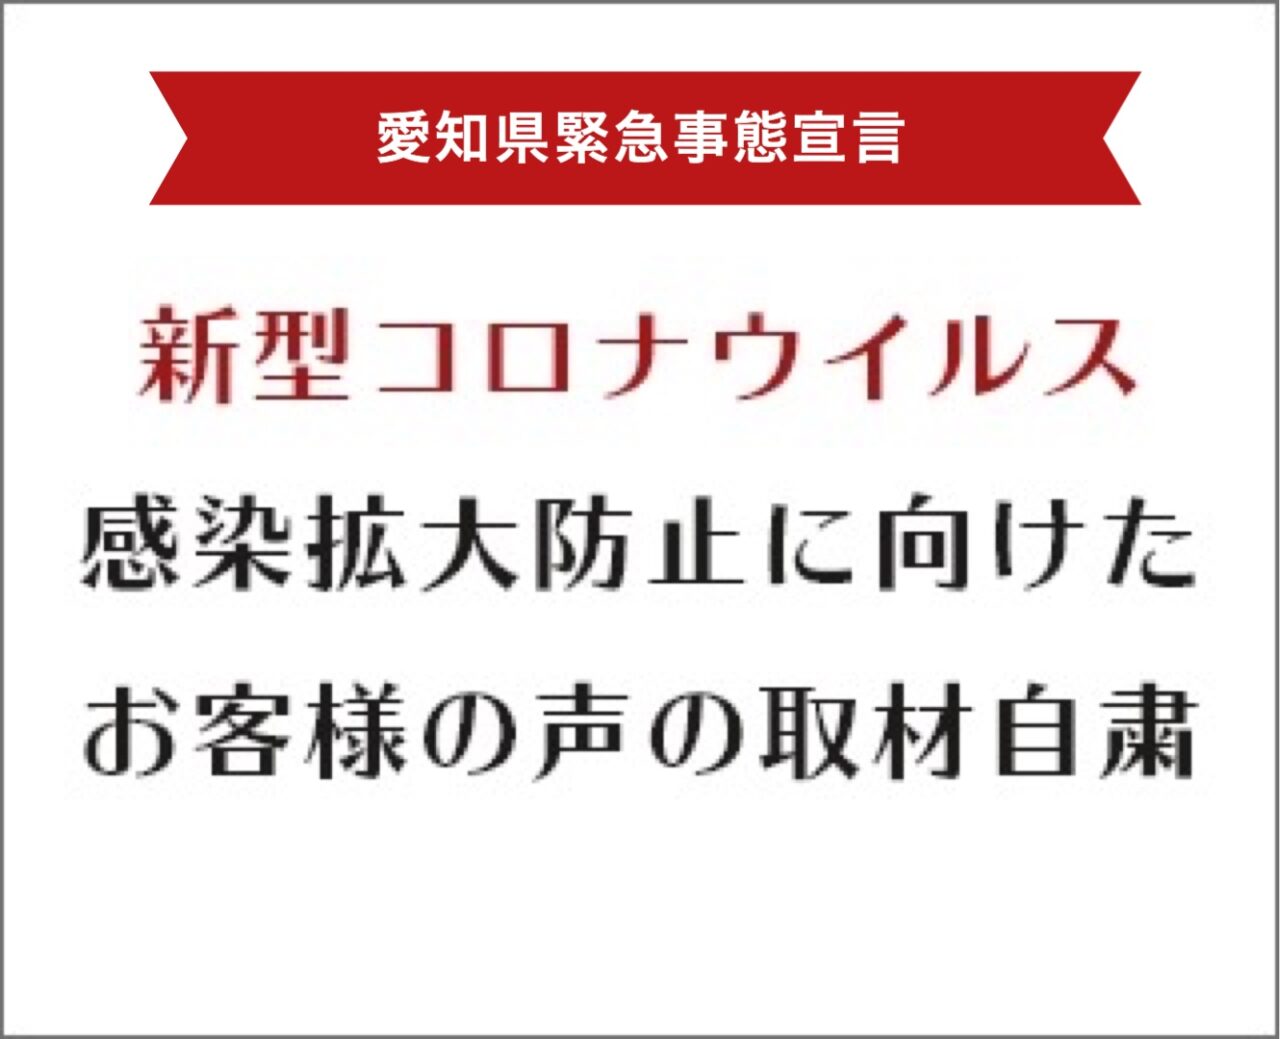 愛知県緊急事態宣言に対する対策について アイチャッチ